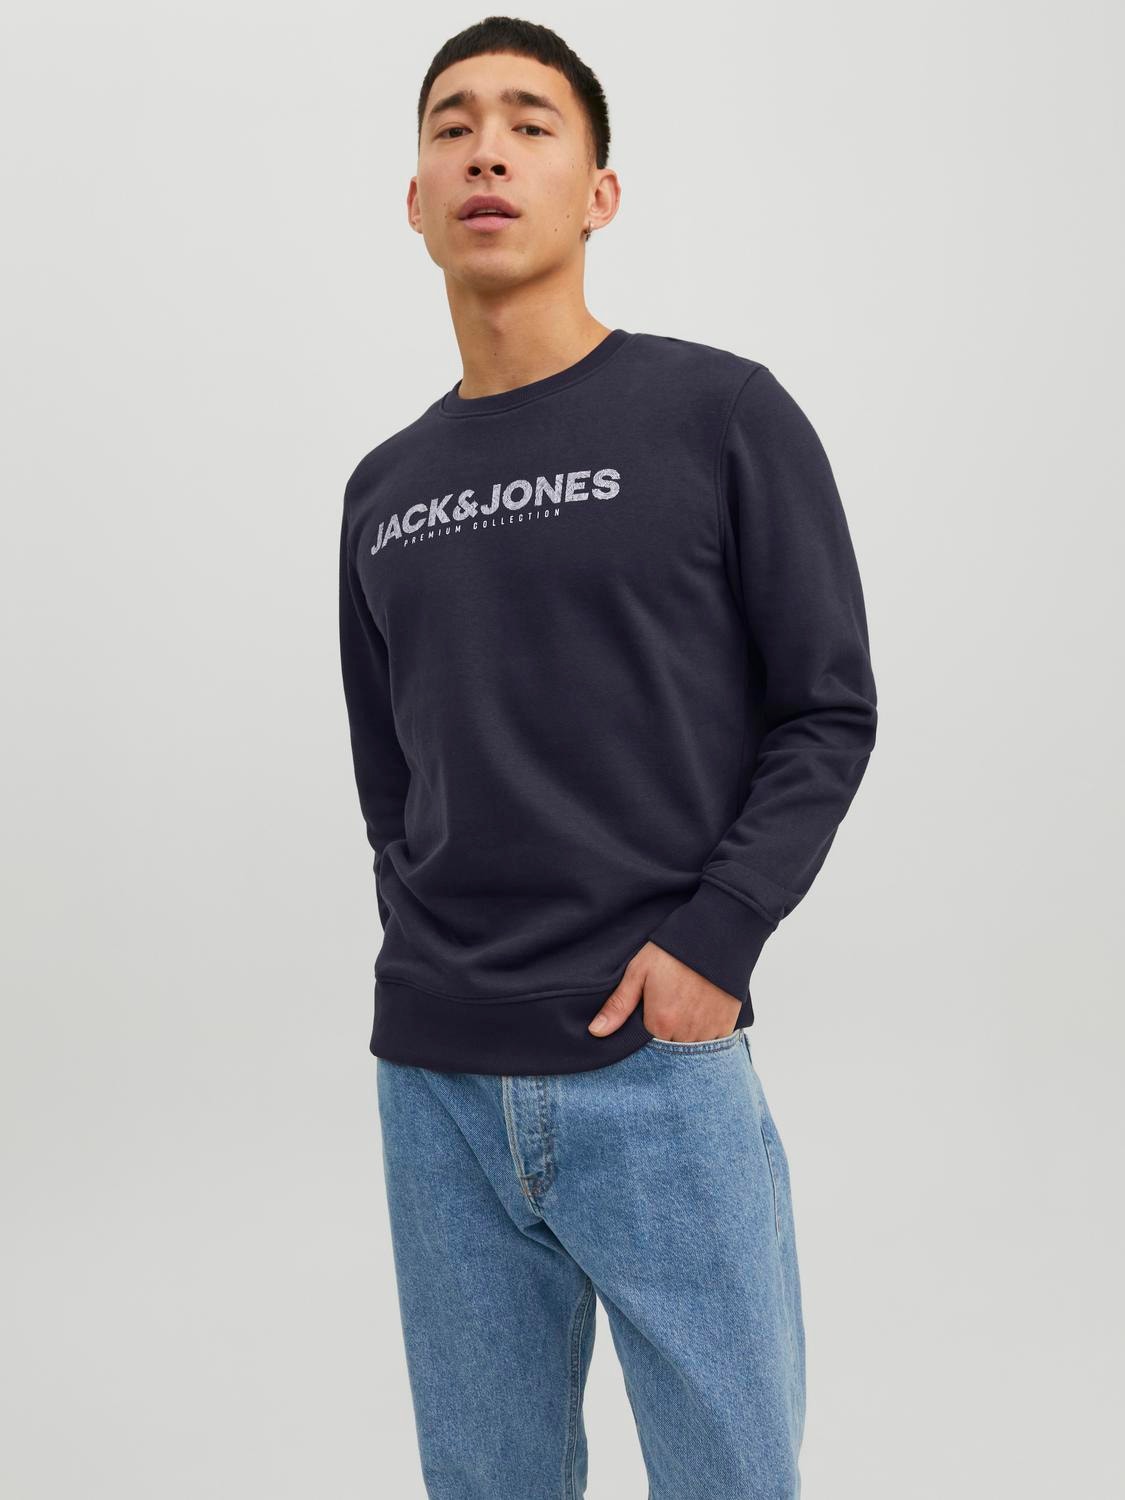 Jack & Jones Logo Crew neck Sweatshirt -Perfect Navy - 12234770